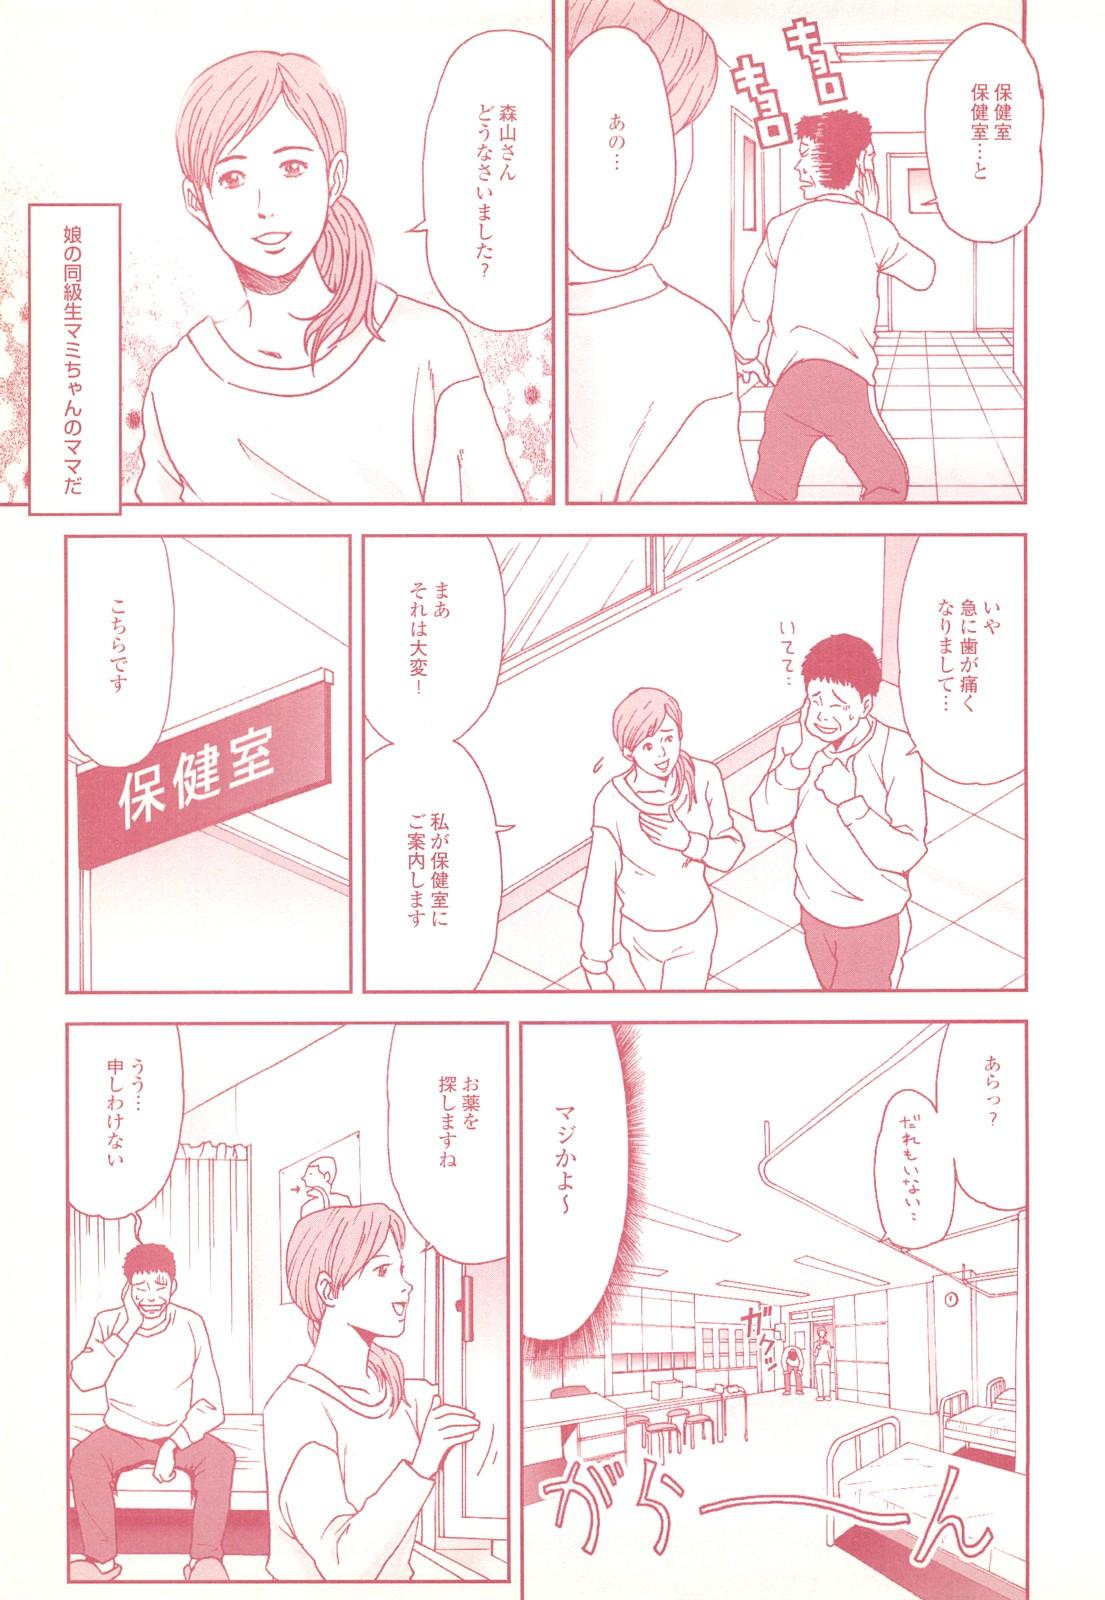 コミック裏モノJAPAN Vol.18 今井のりたつスペシャル号 110